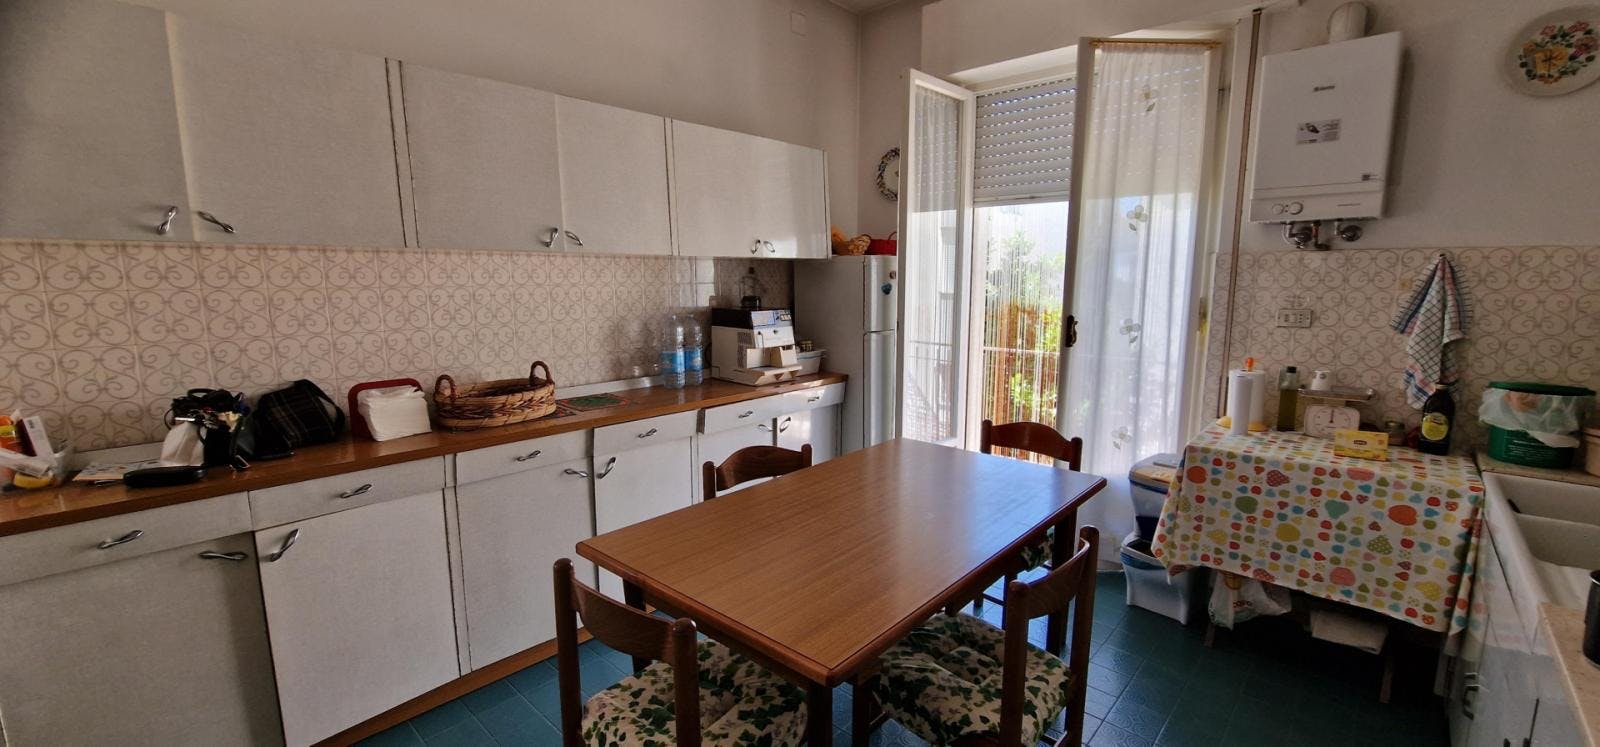 4-bedroom house in Villa Pitignano